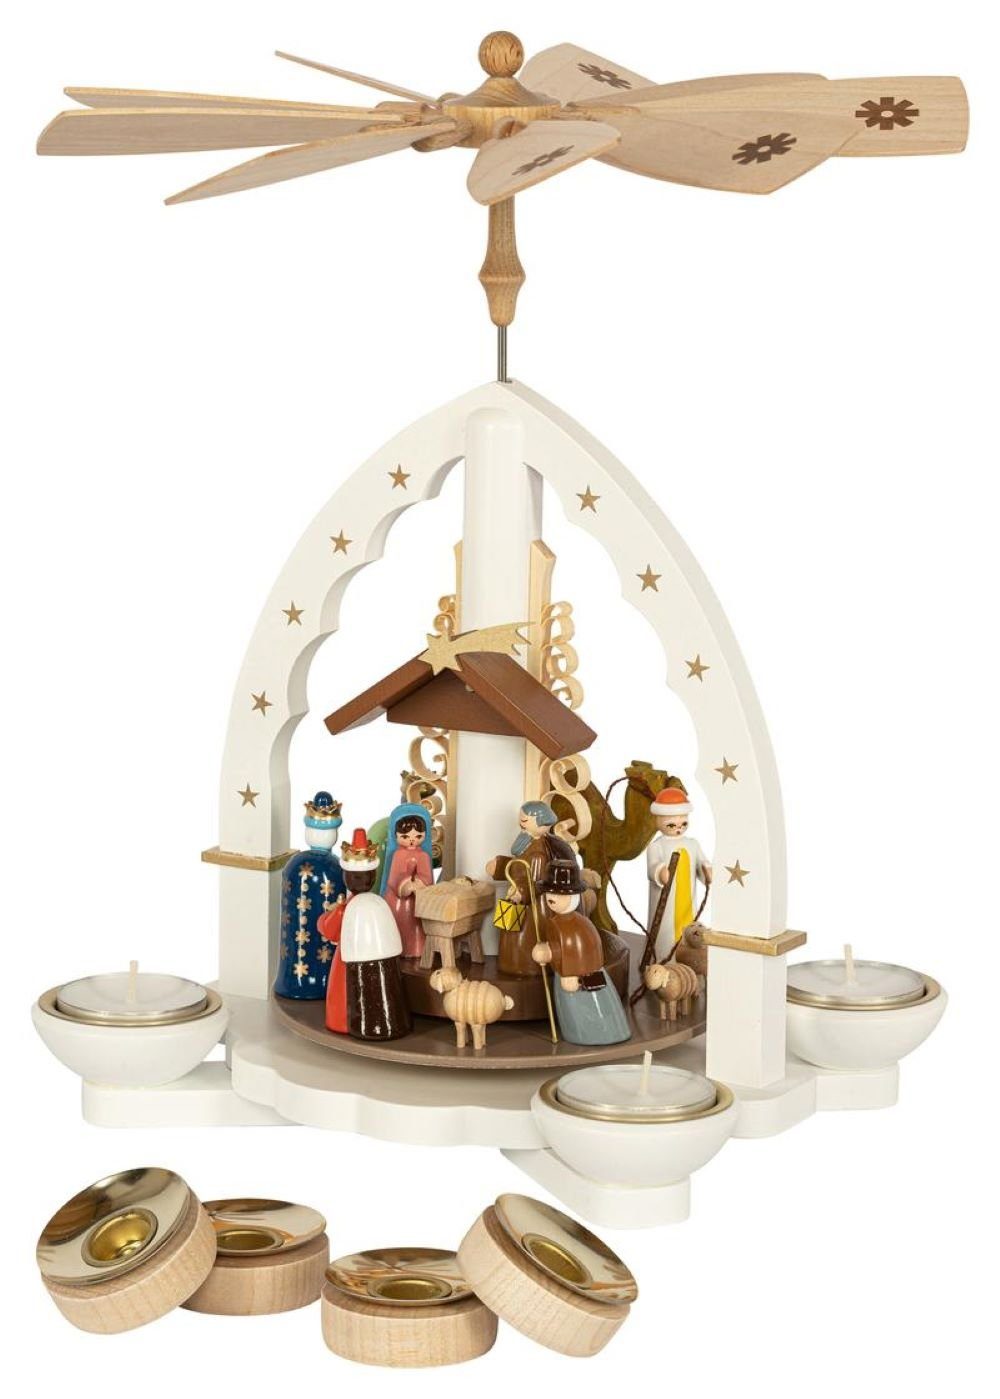 vom für Erzgebirge weiß Heilige dem Handwerkskunst Hersteller, Richard Glaesser und Familie Teelicht Kerzen Weihnachtspyramide aus direkt